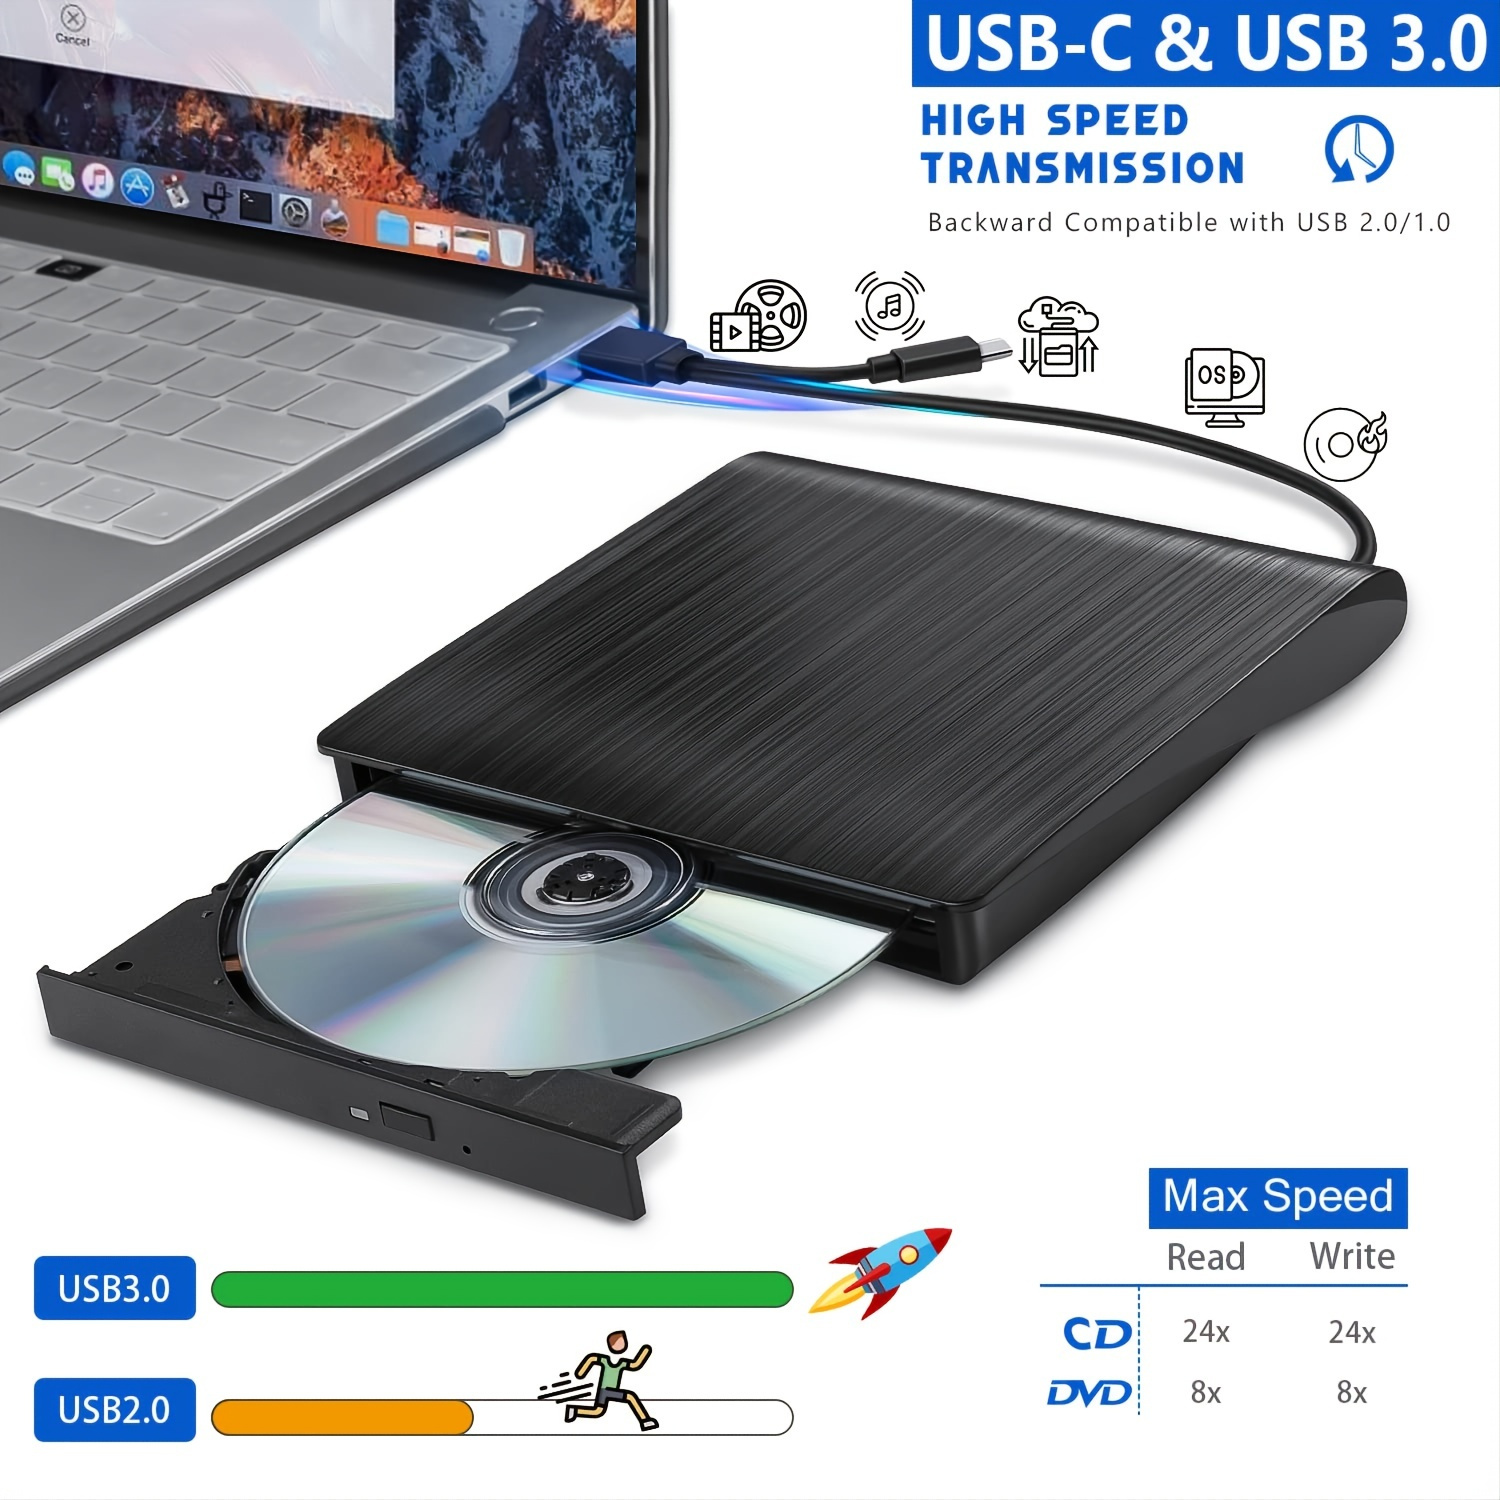 INECK® Lecteur Externe DVD R CD-RW Lecteur CD Graveur CD USB 2.0 DVD Combo  - Compatible avec Macbook Air (Pro) & d'autres PC portable/ordinateurs  (Windows Vista/ Linux/ 7 /8 /10 & Mac